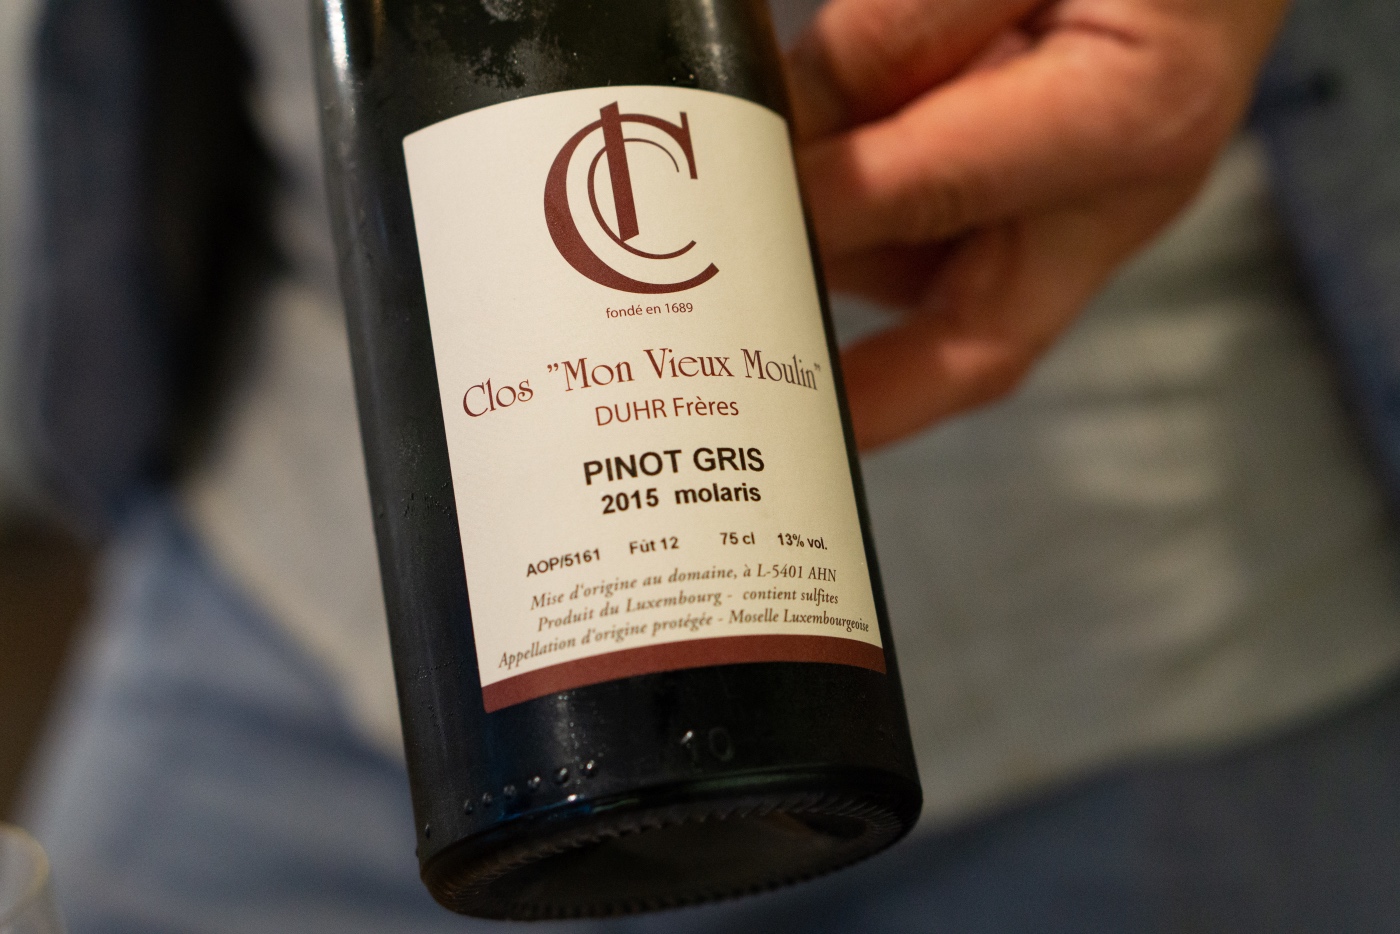 Clos "Mon Vieux Moulin" - Pinot Gris 2015